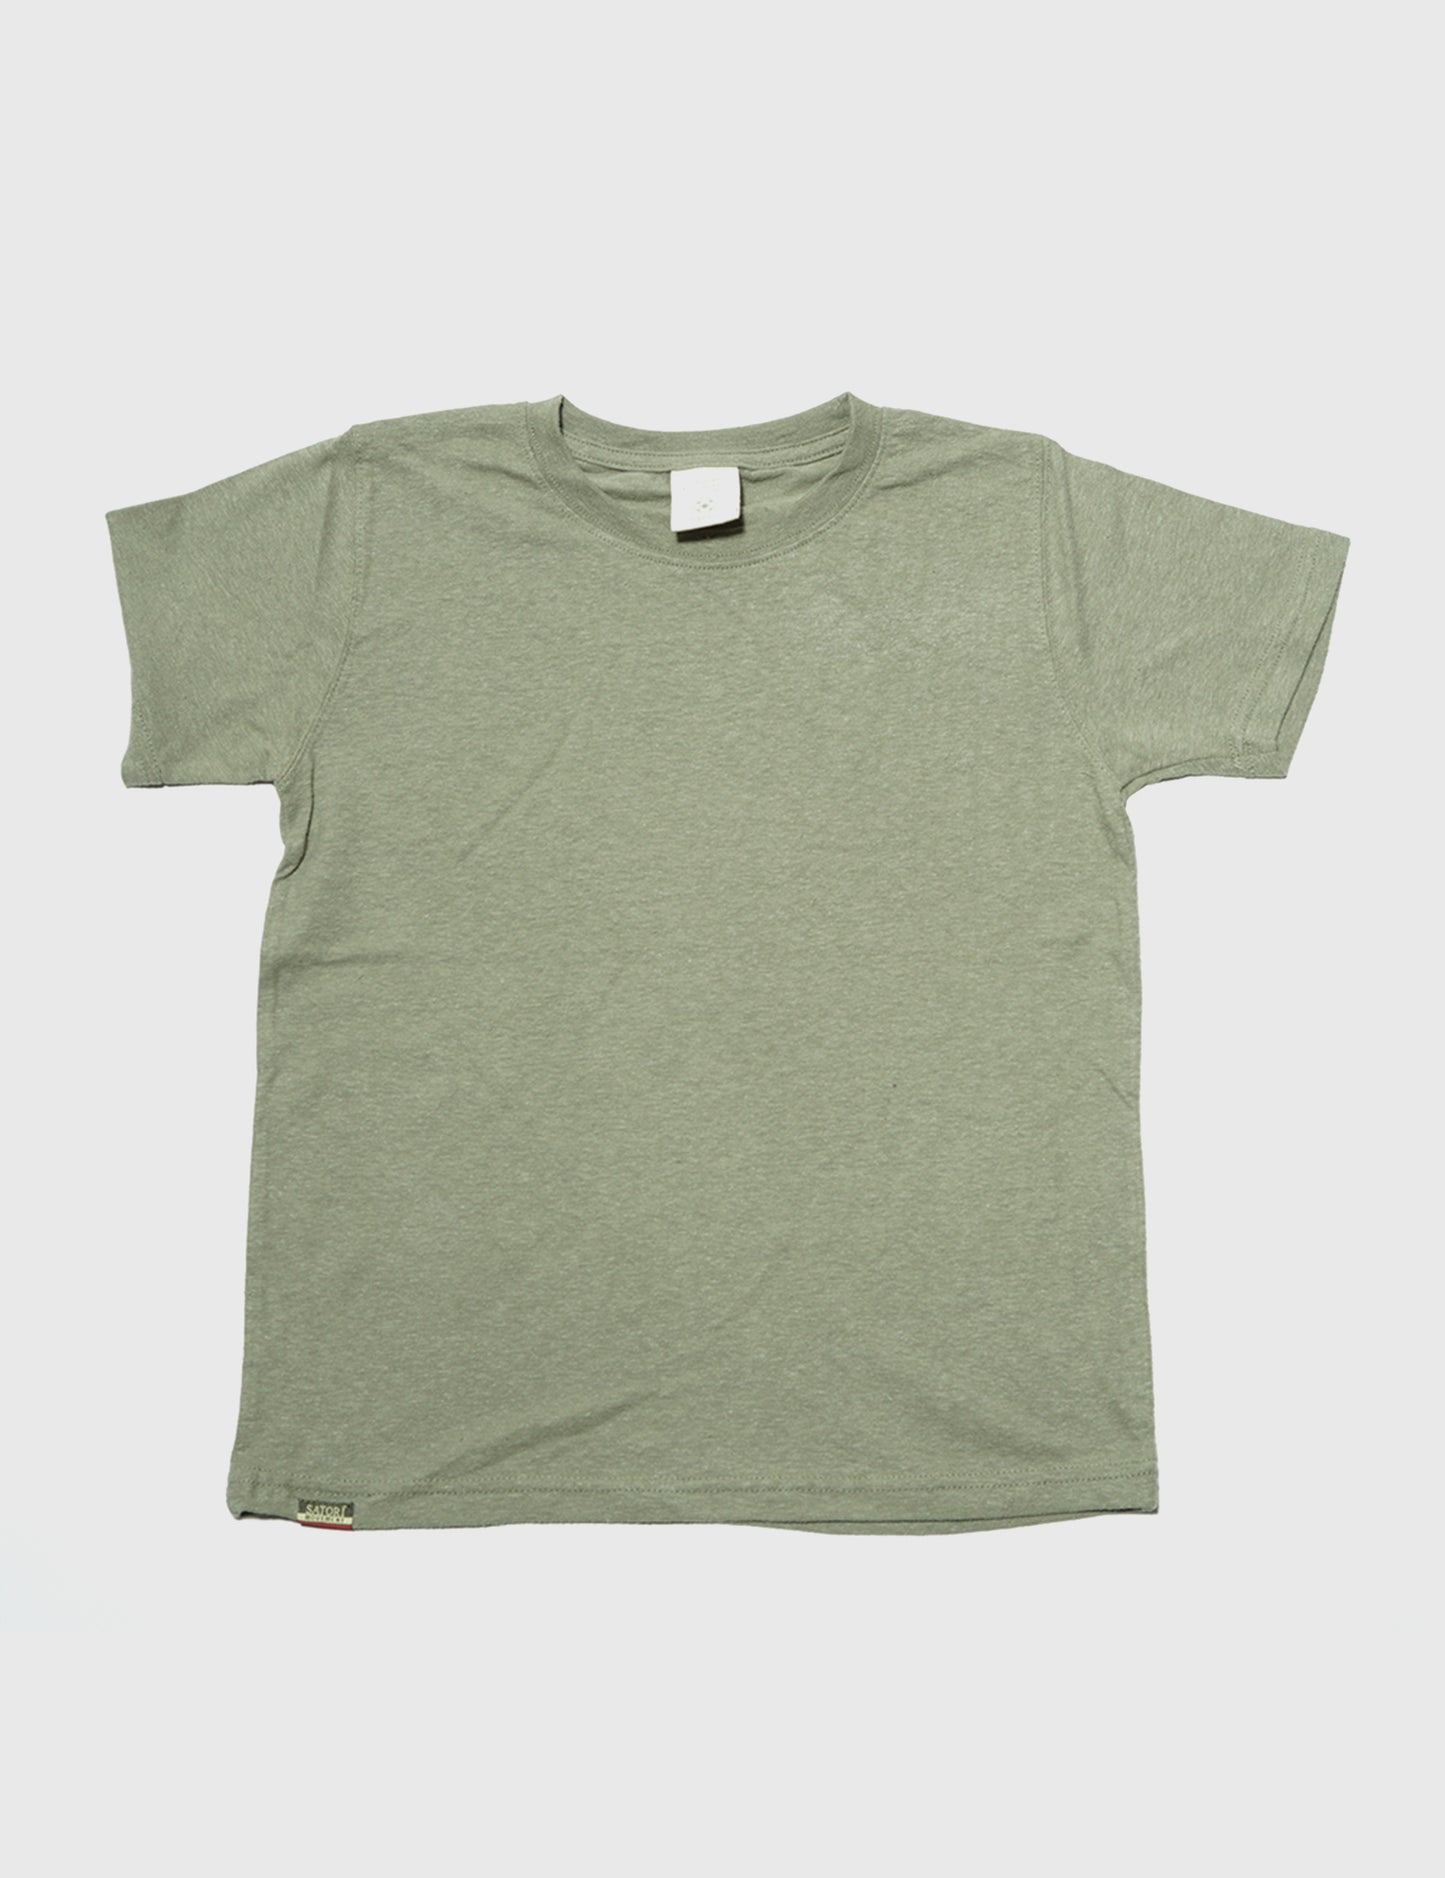 Kids' Blank Hemp T-Shirt